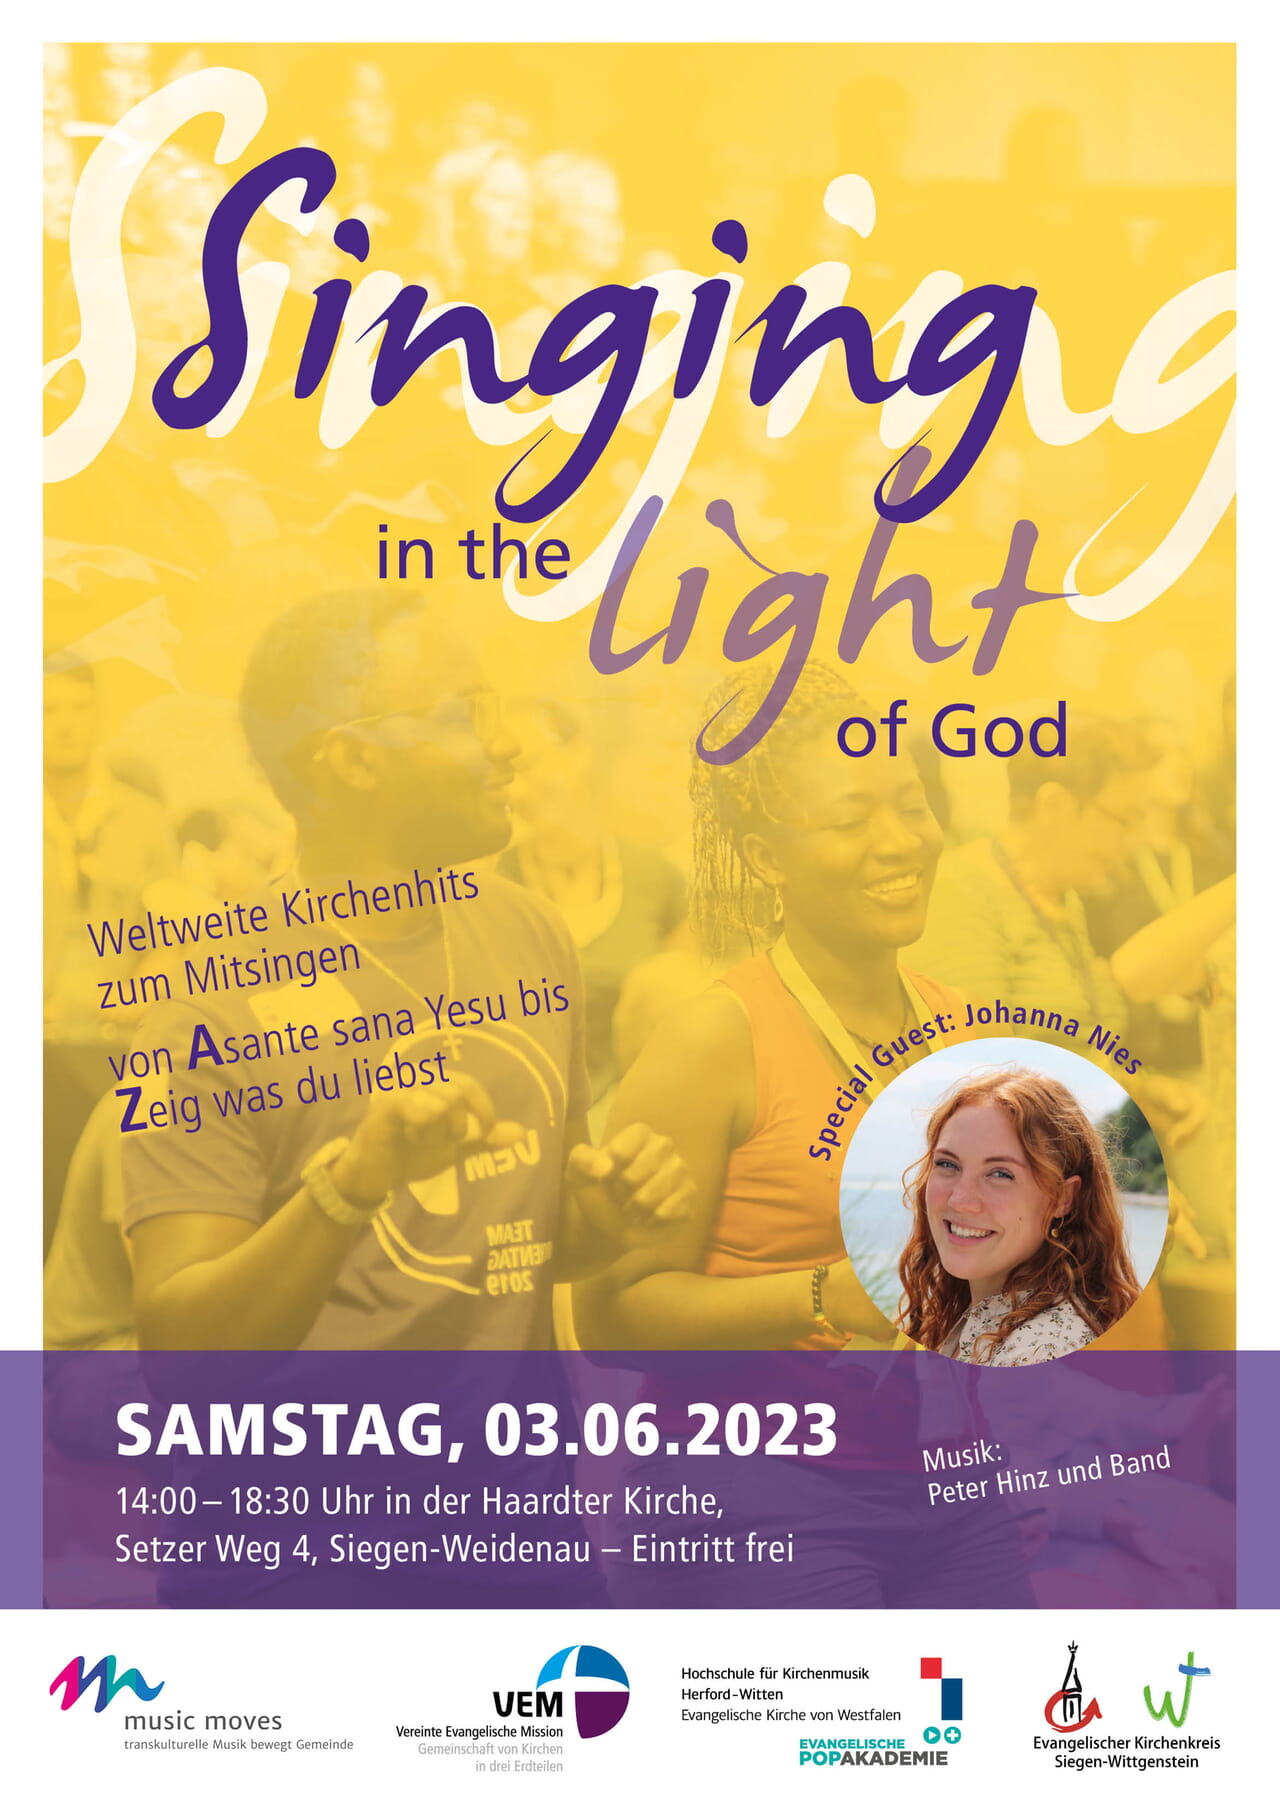 Plakat zur Veranstaltung "Singing in the light of god" am 3. Juni von 14 bis 18.30 Uhr in der Haardter Kirche in Weidenau